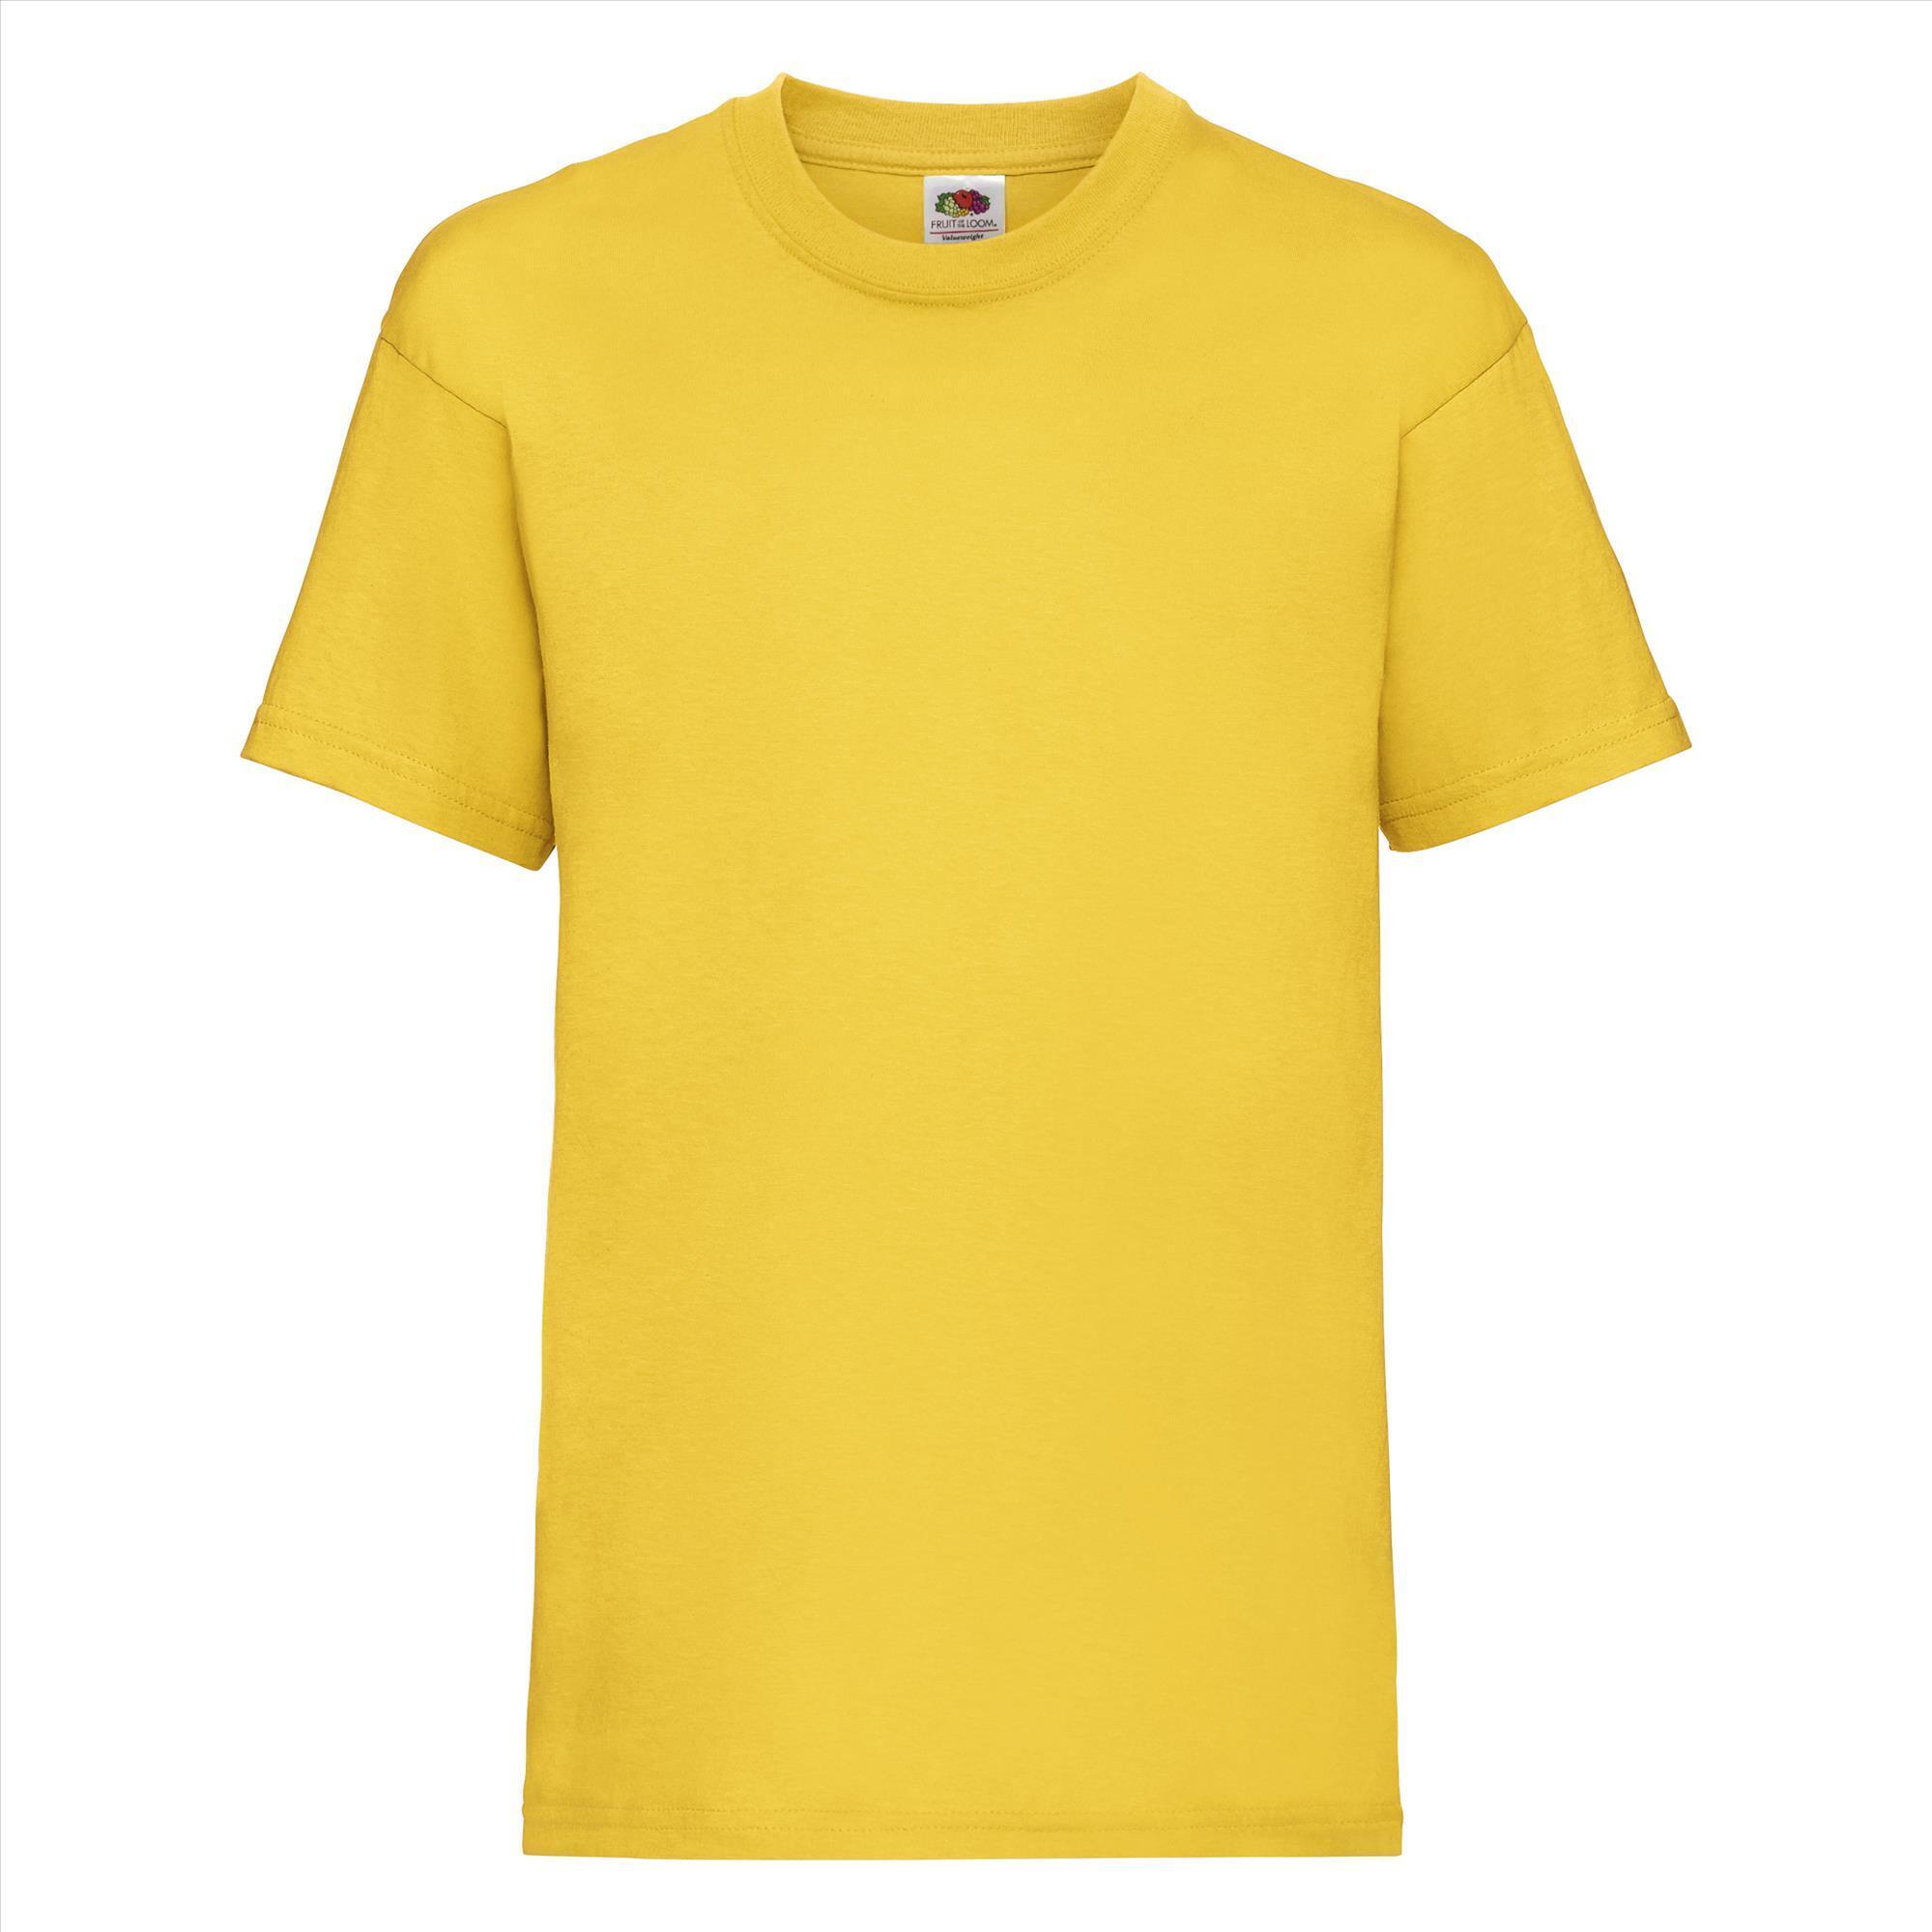 Gepersonaliseerde Kinder T-shirt zonnebloem geel Kinderkleding bedrukken